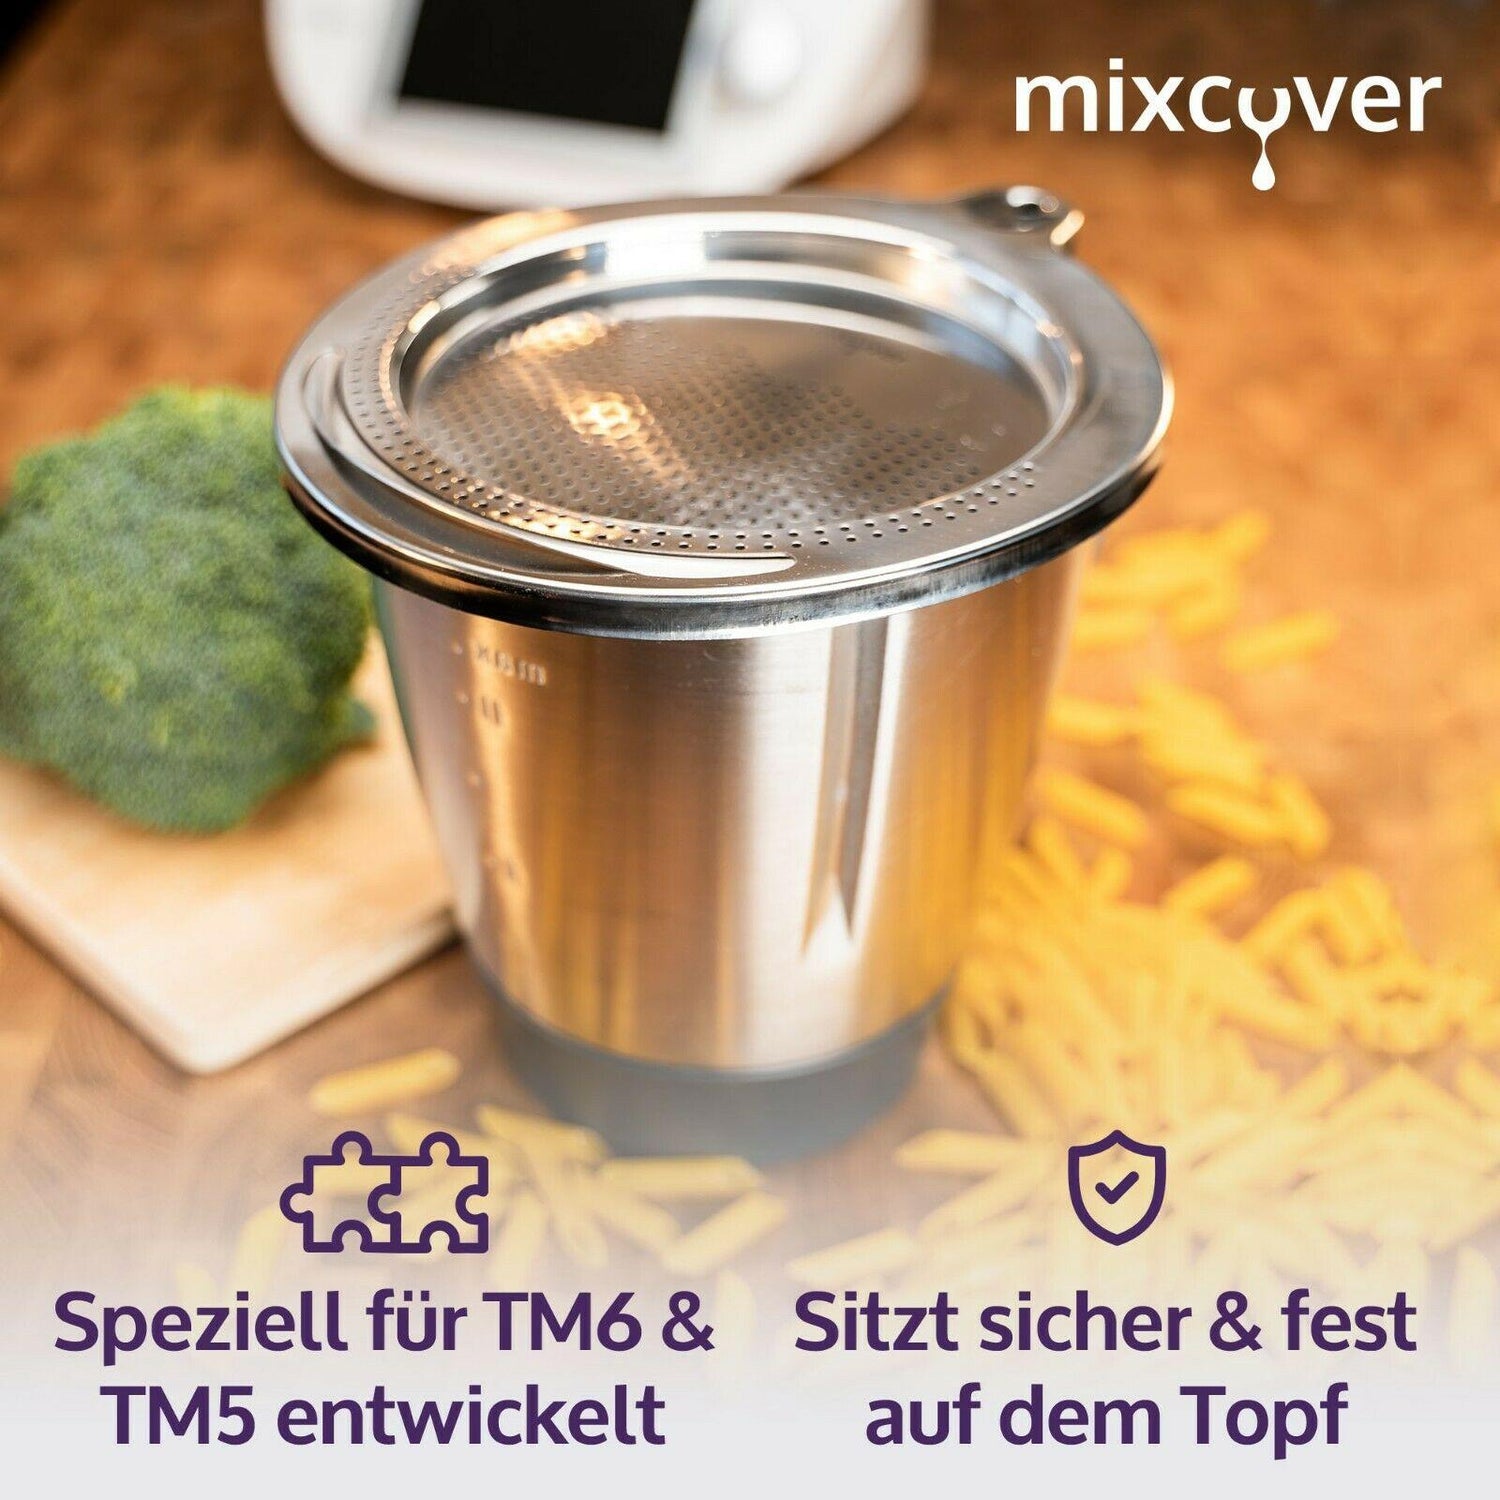 mixcover Edelstahl Sieb Abgieß-Hilfe Wiegeteller Spritzschutz für Thermomix TM6 und TM5 - Mixcover - Mixcover